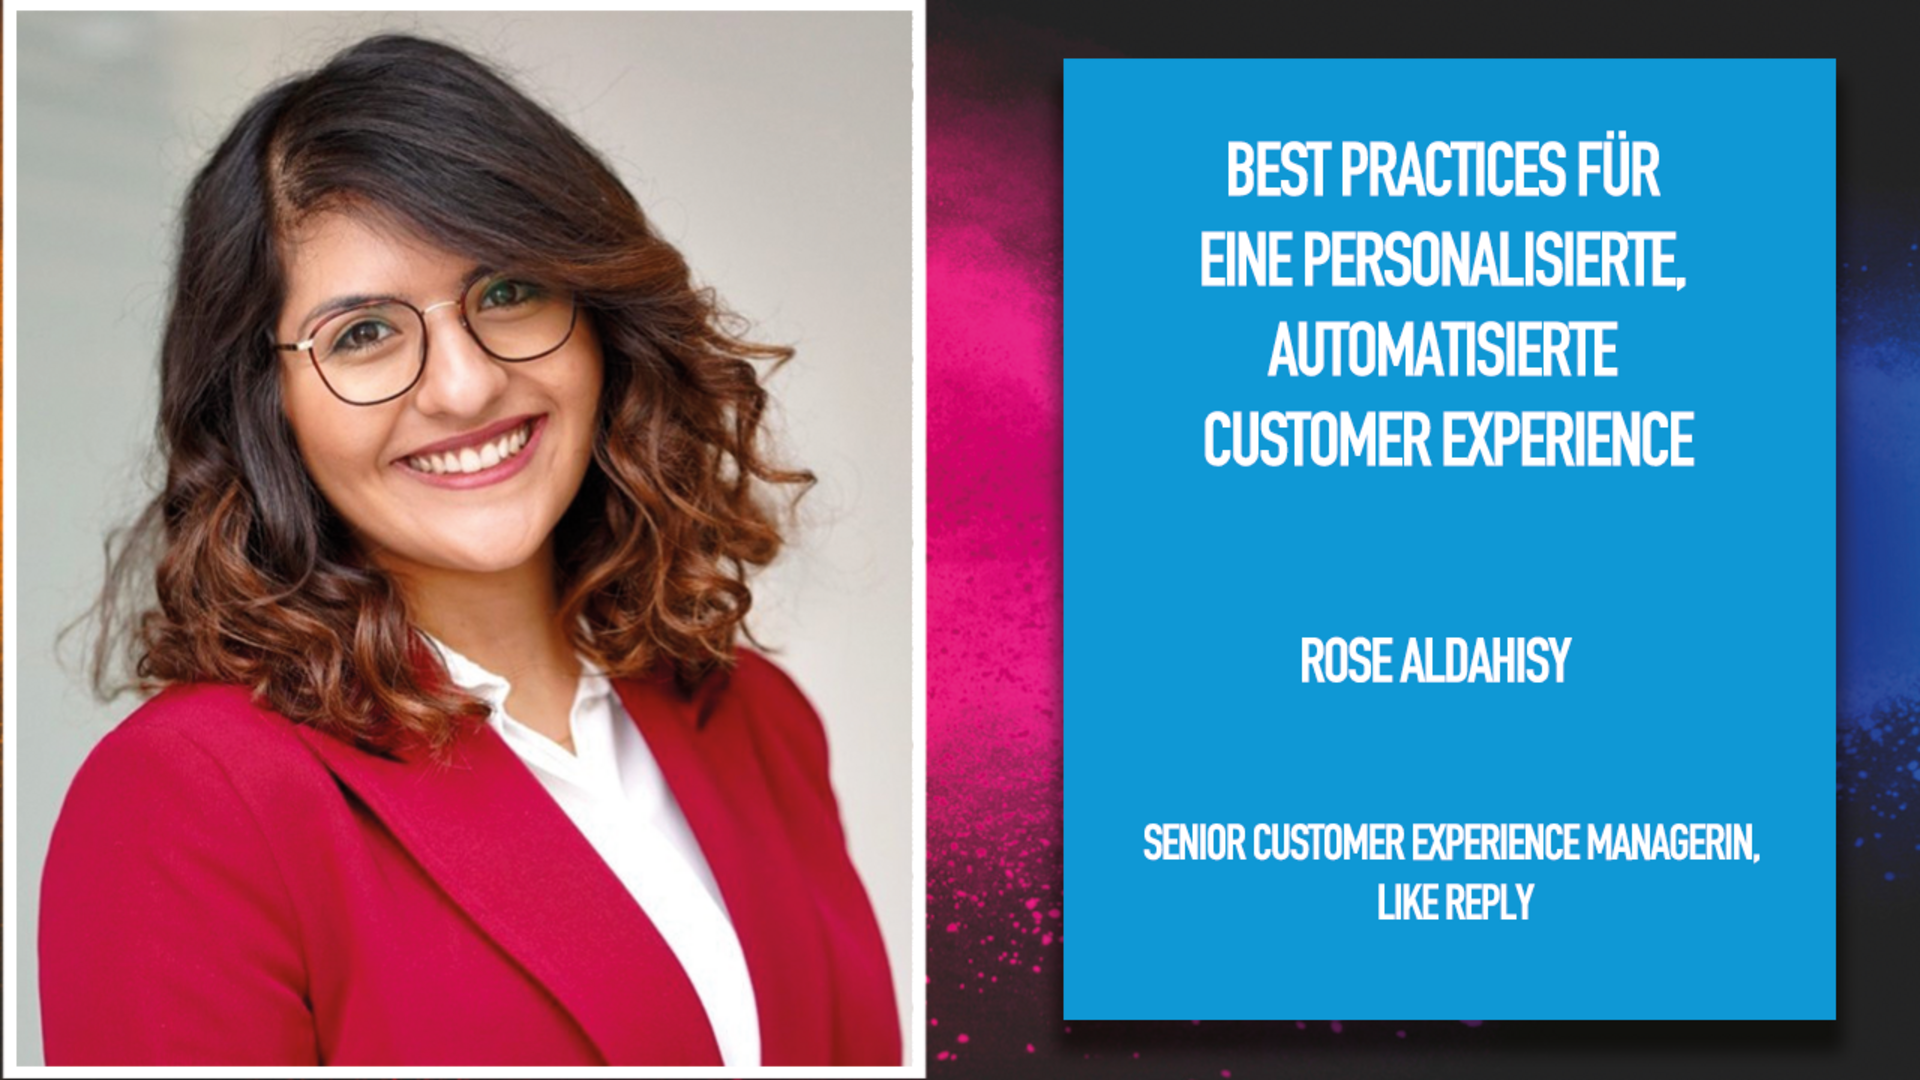 Best Practices für eine personalisierte, automatisierte Customer Experience